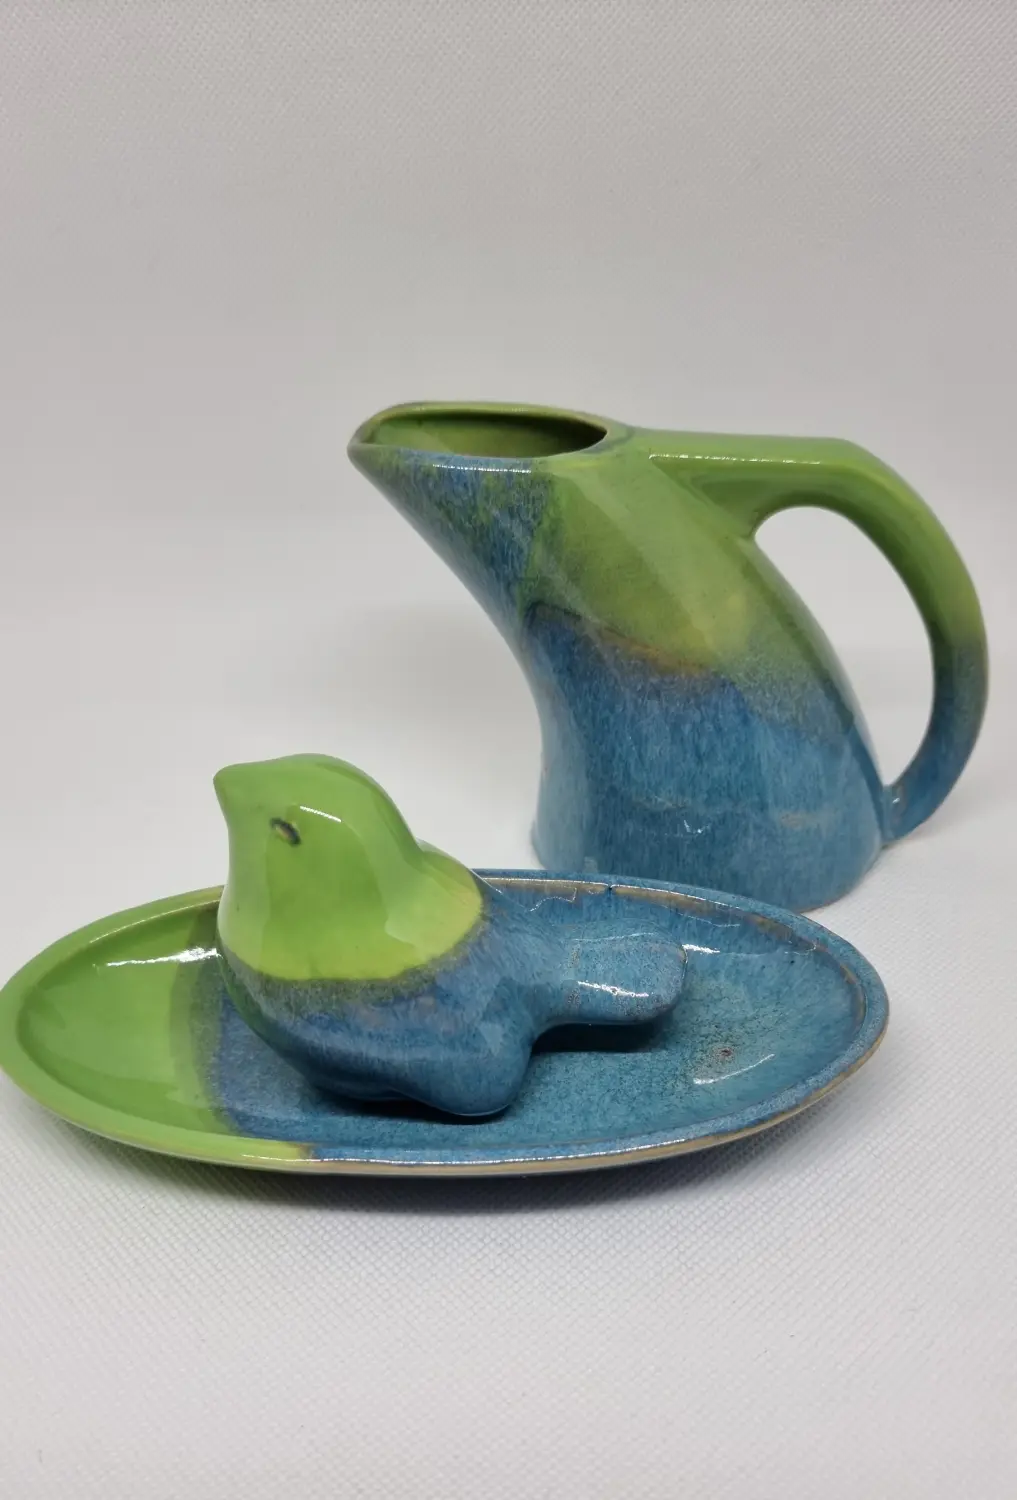 DUENDE - Skulpturen/Keramik, Keramik 3 Set blau grün glasier IV